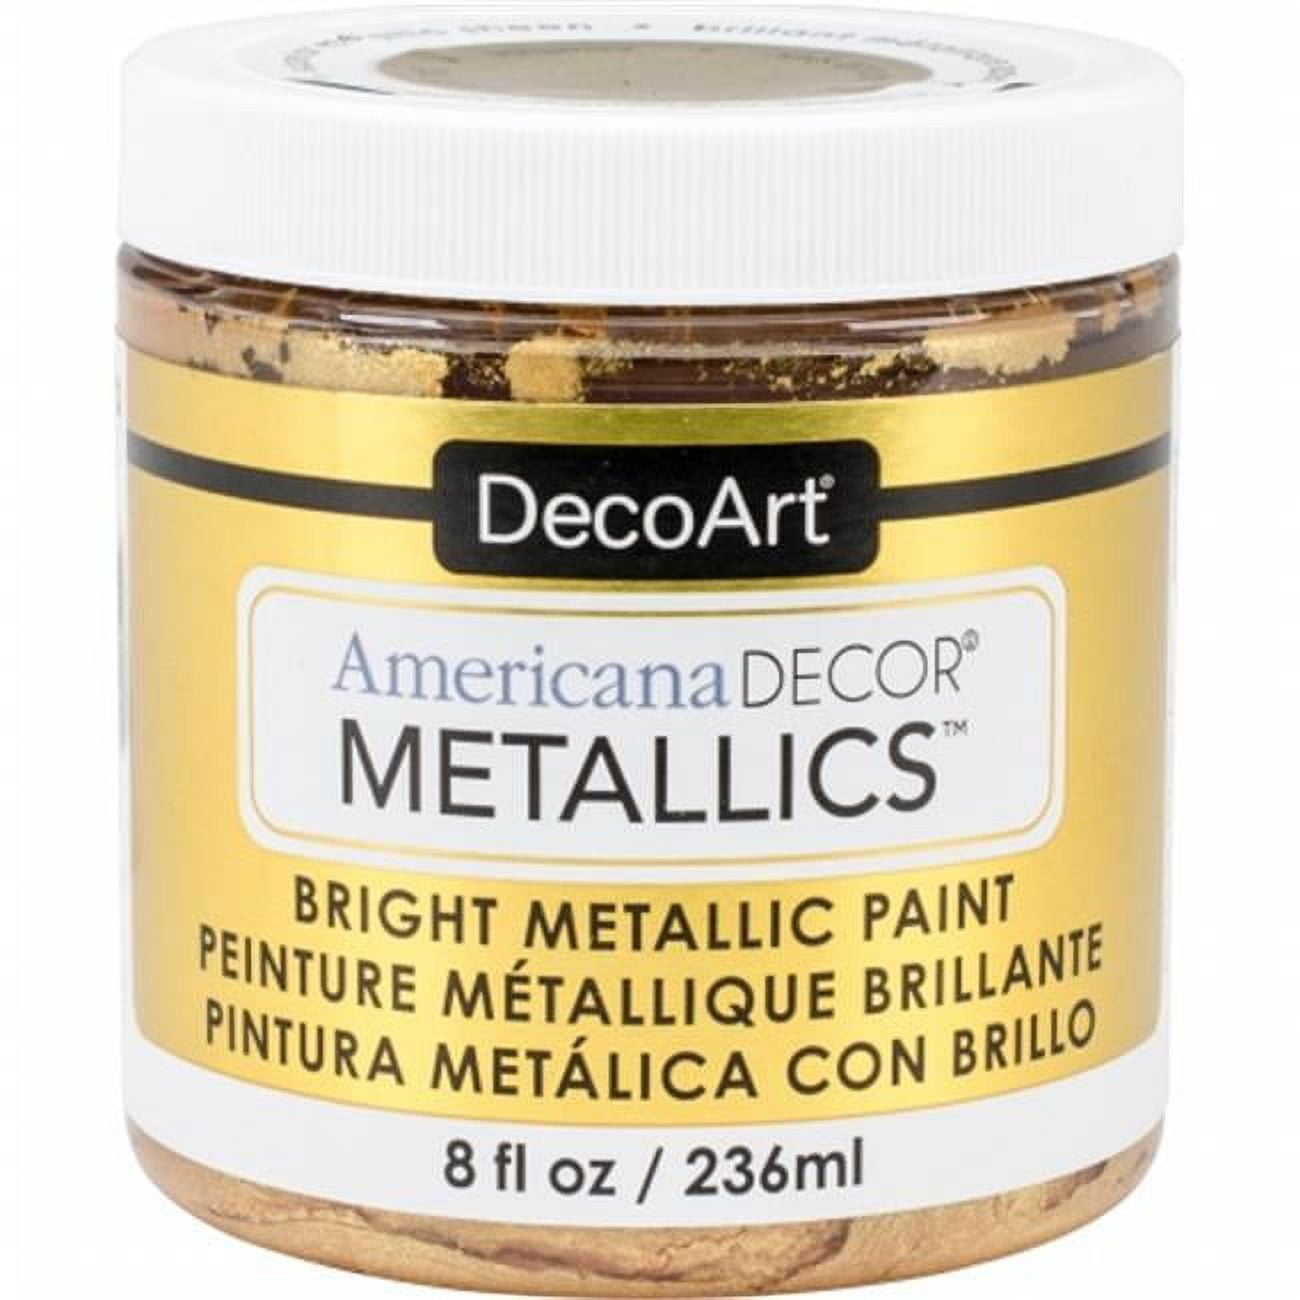 DecoArt Media® Metallic Gold Fluid Acrylic Paint, 1oz.